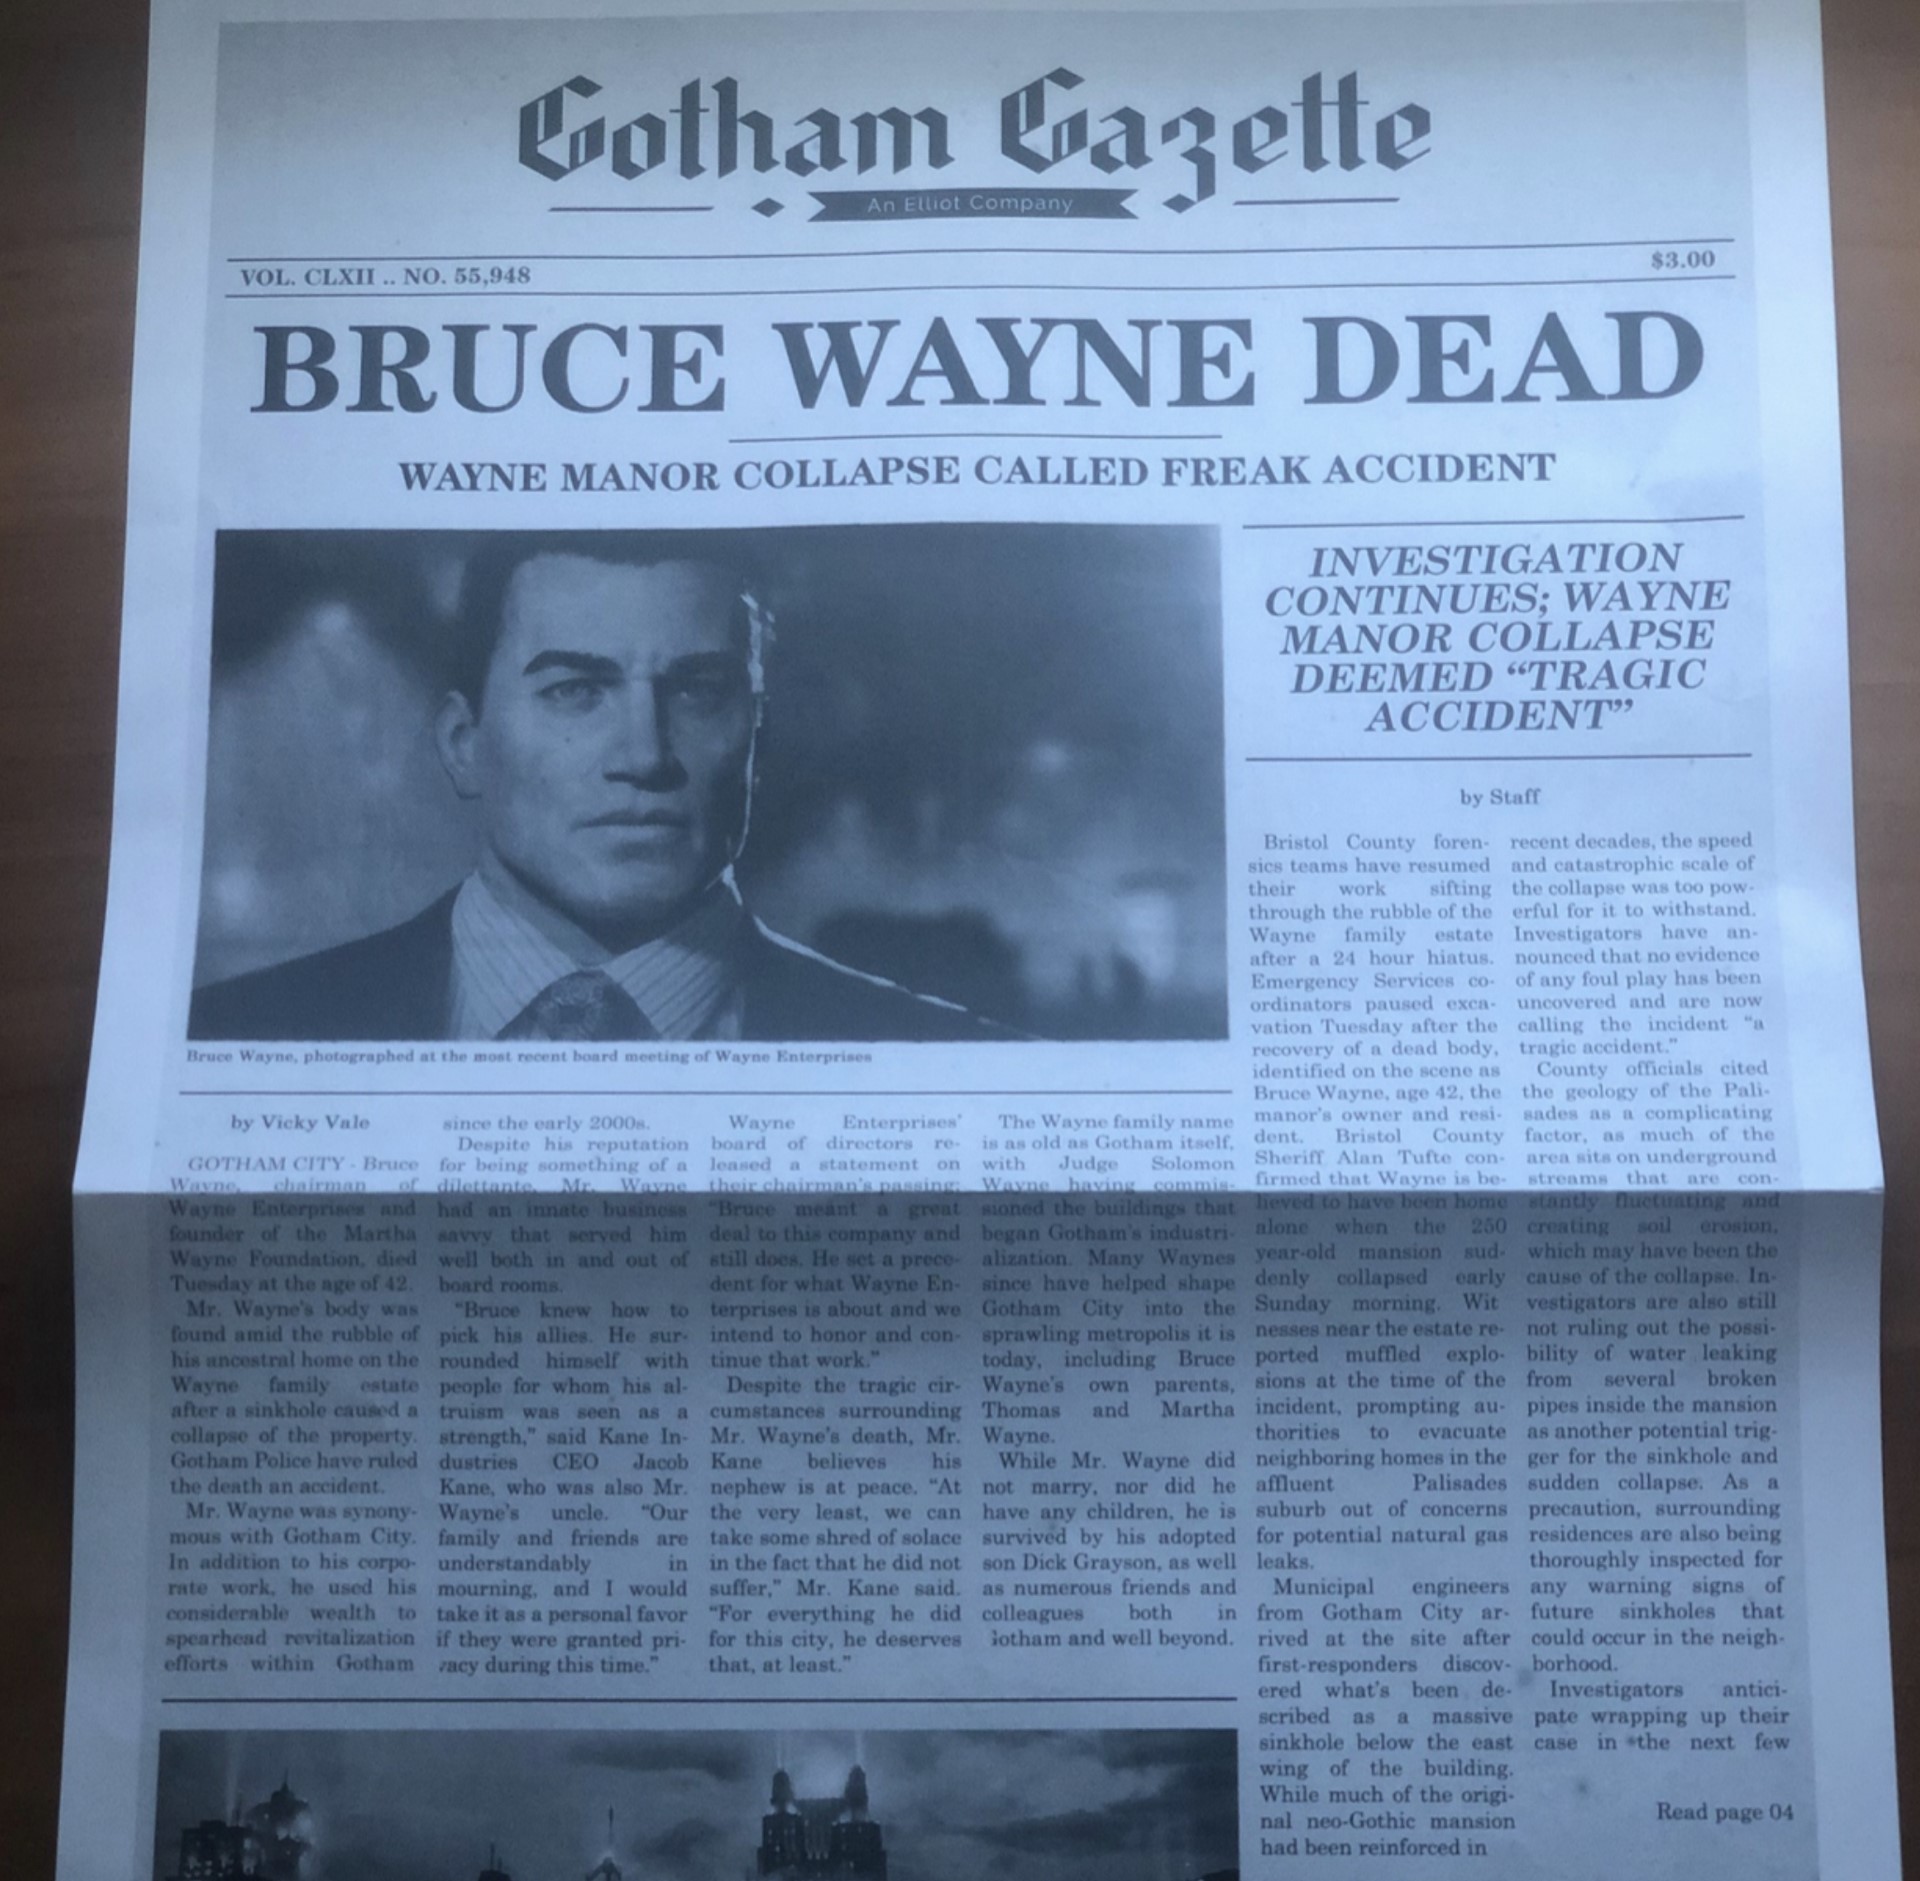 خبر کشته شدن بروس وین در روزنامه گاتهام گزت